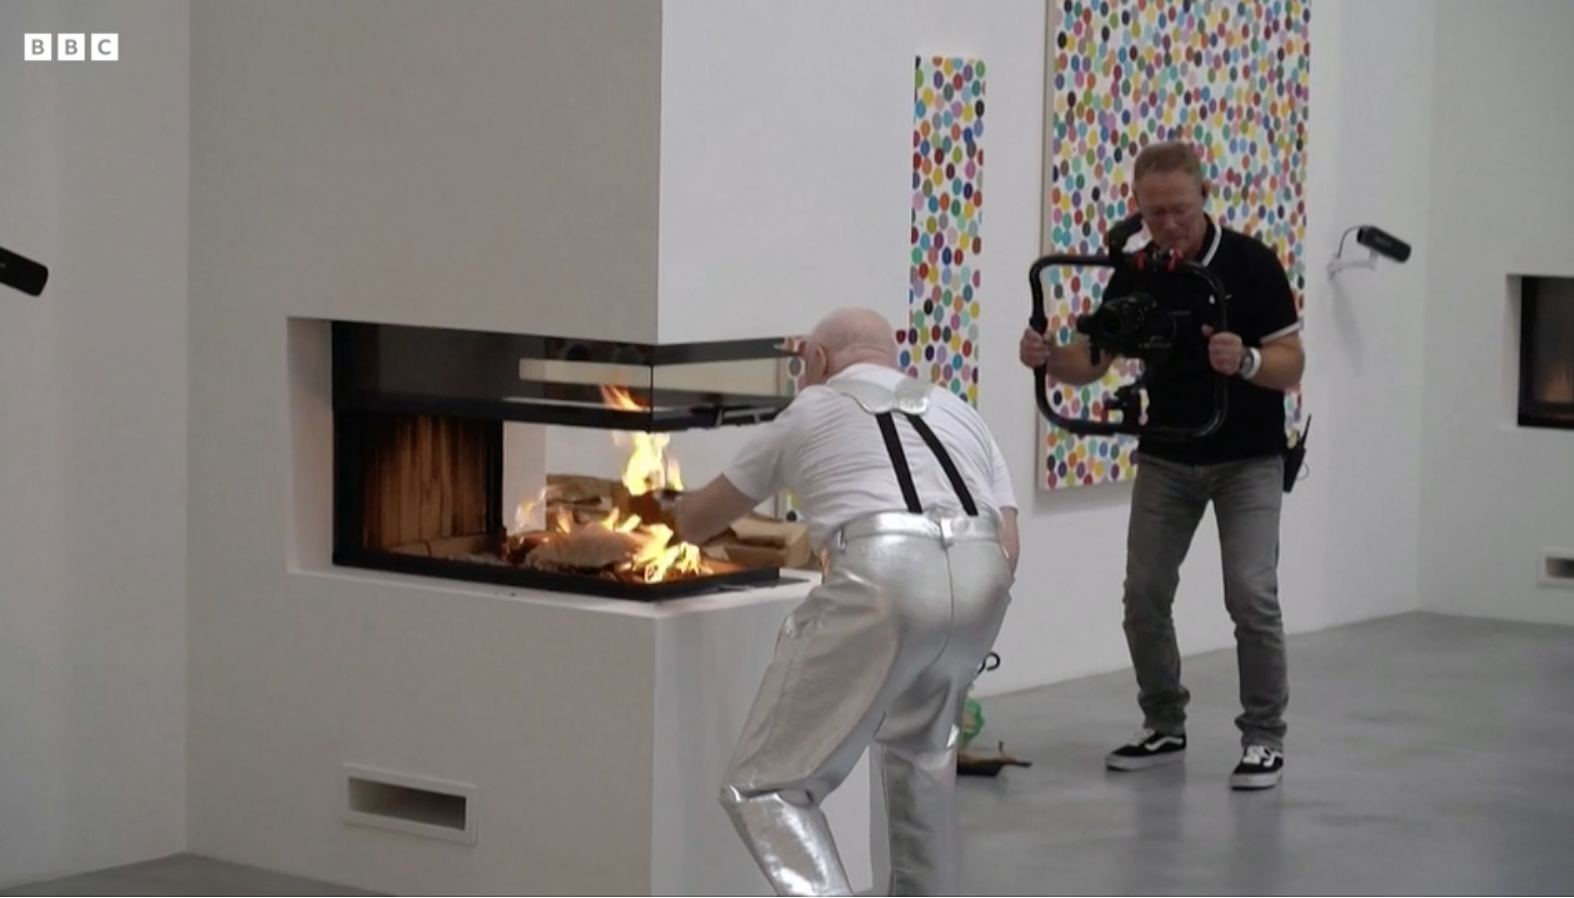 【作品解説】ダミアン・ハースト「物理的アートを燃やしてNFTアートへ移行する」